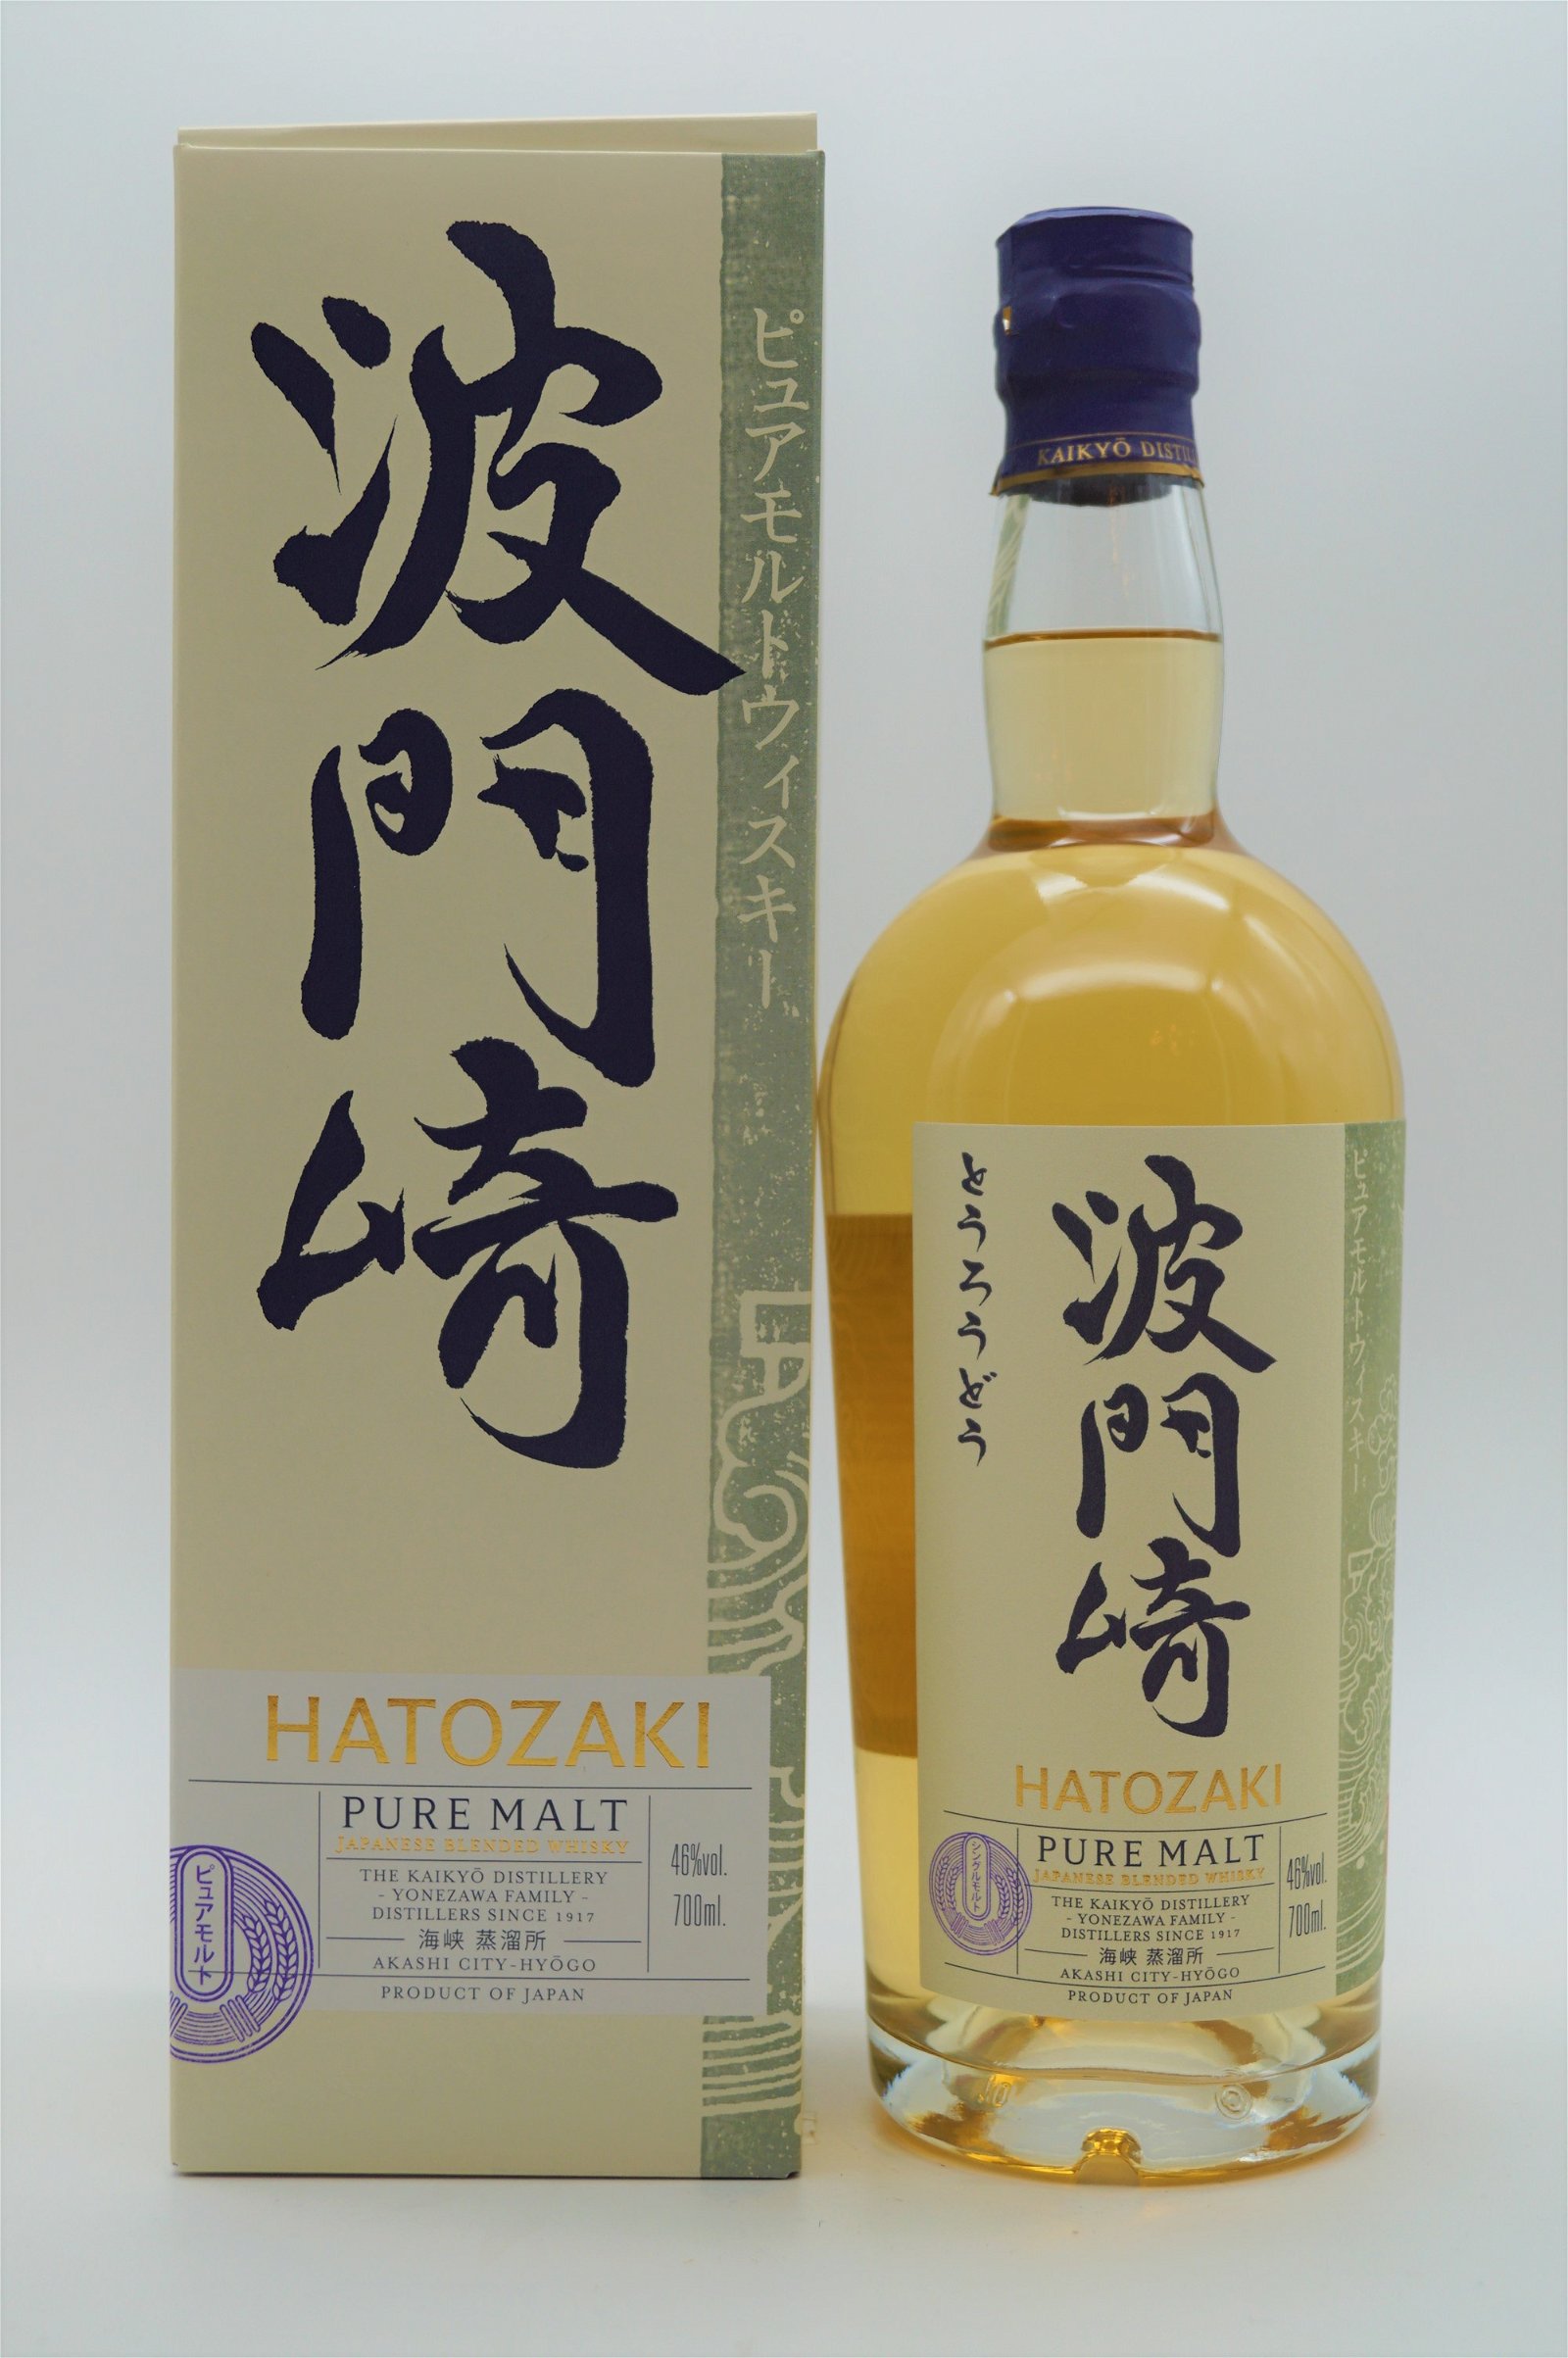 Hatozaki Pure Malt Blended Whisky Japanese